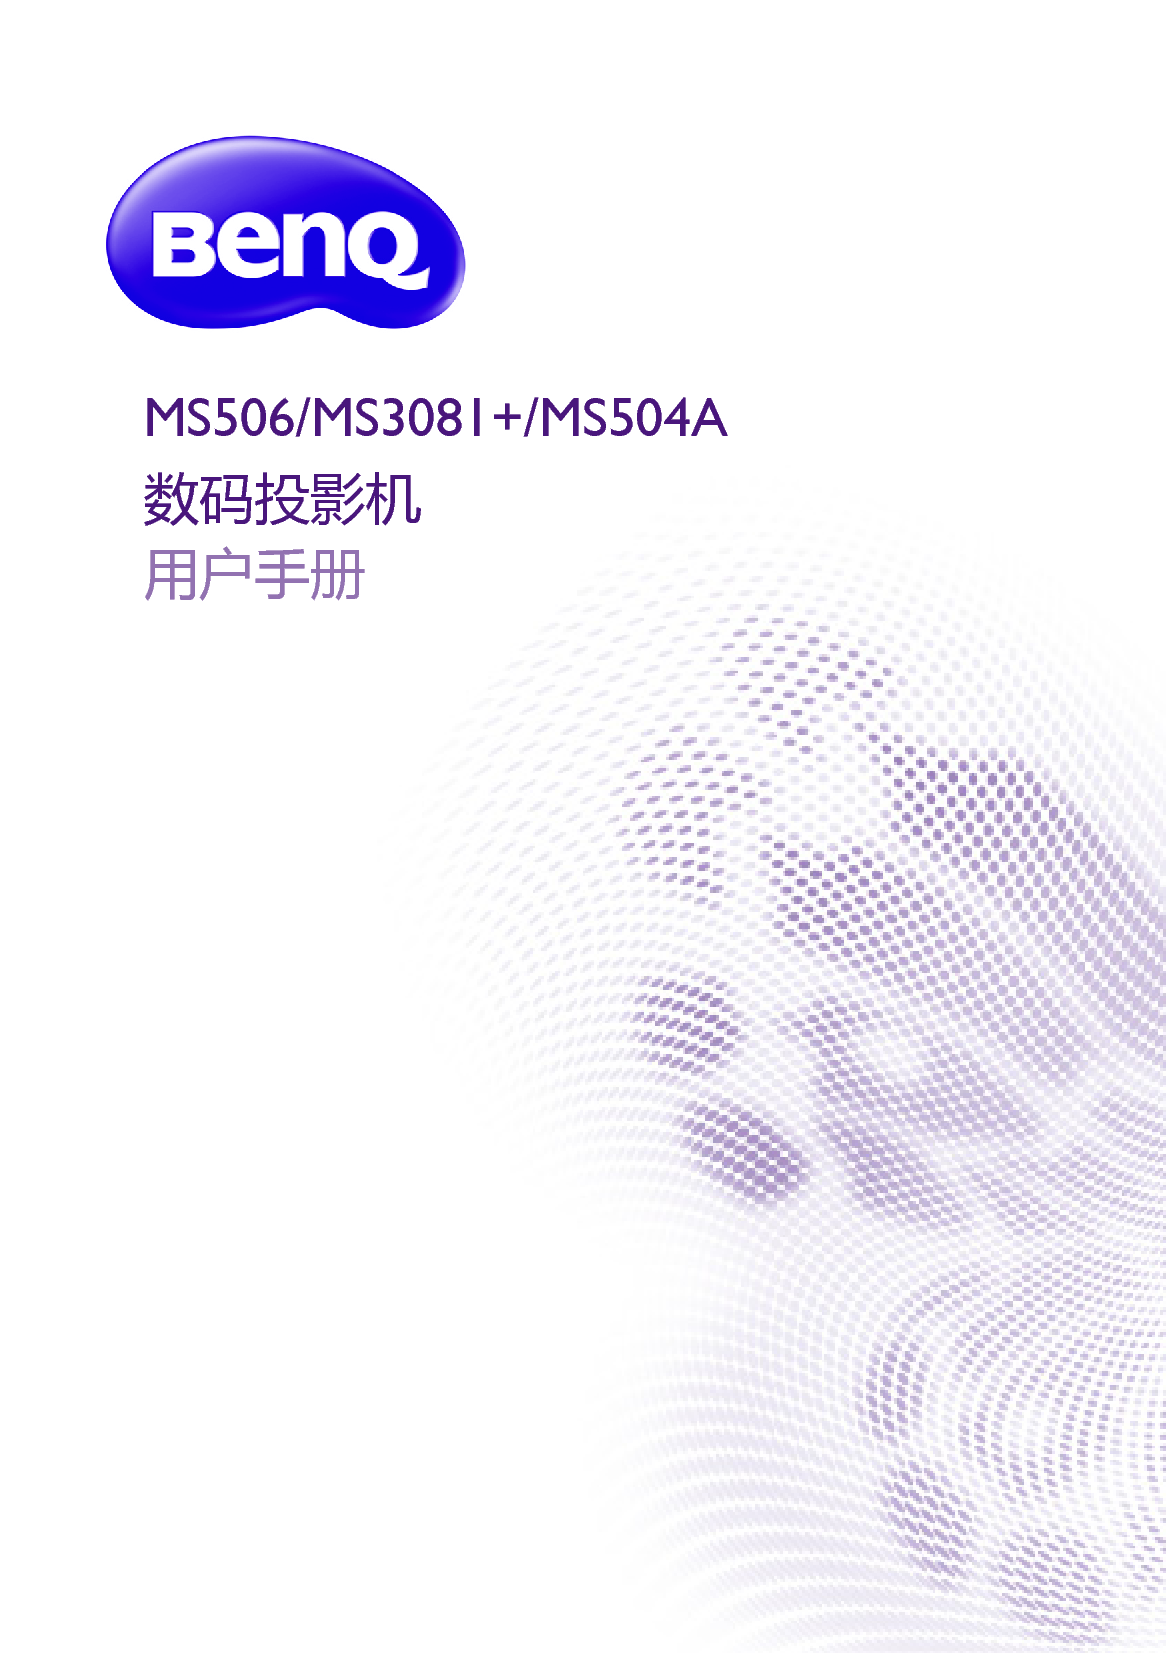 明基 Benq MS3081+, MS504A 用户手册 封面